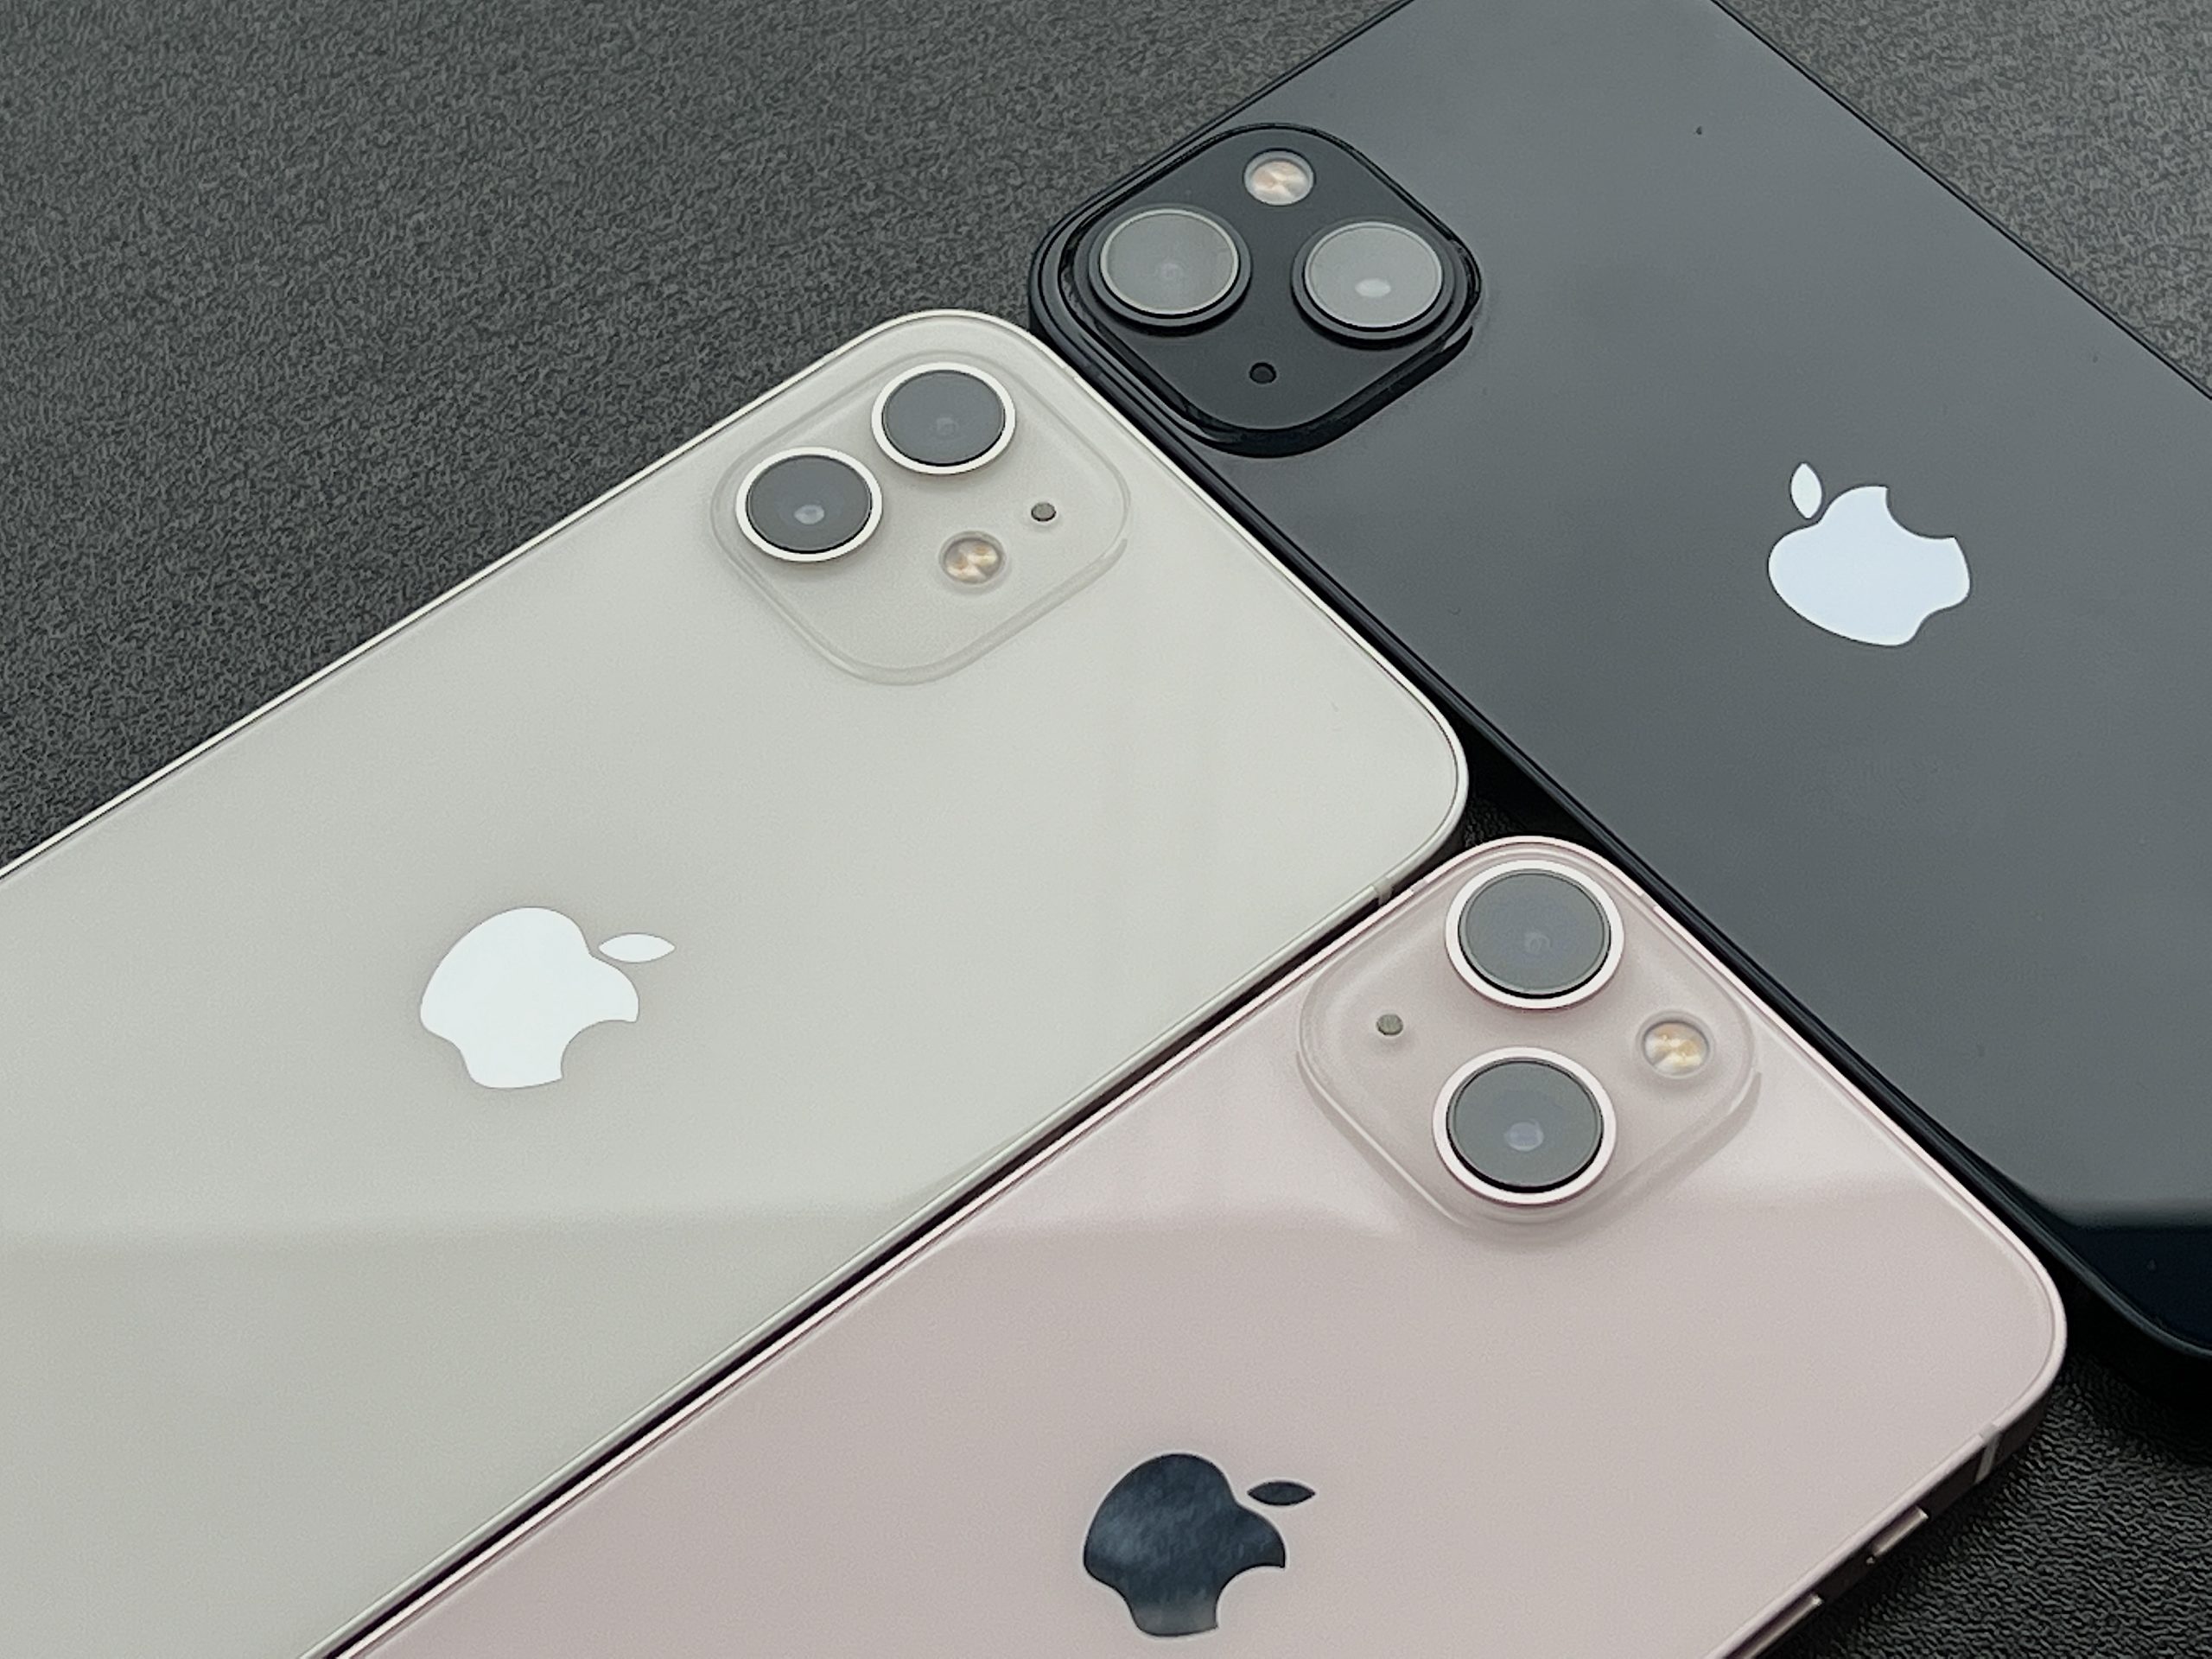 Valkoinen iPhone 12, keskiyö iPhone 13 ja pinkki iPhone 13 mini. Perusmalleissa takakamerat on nyt sijoitettu kohouman vastakkaisiin kulmiin, ei enää allekkain.